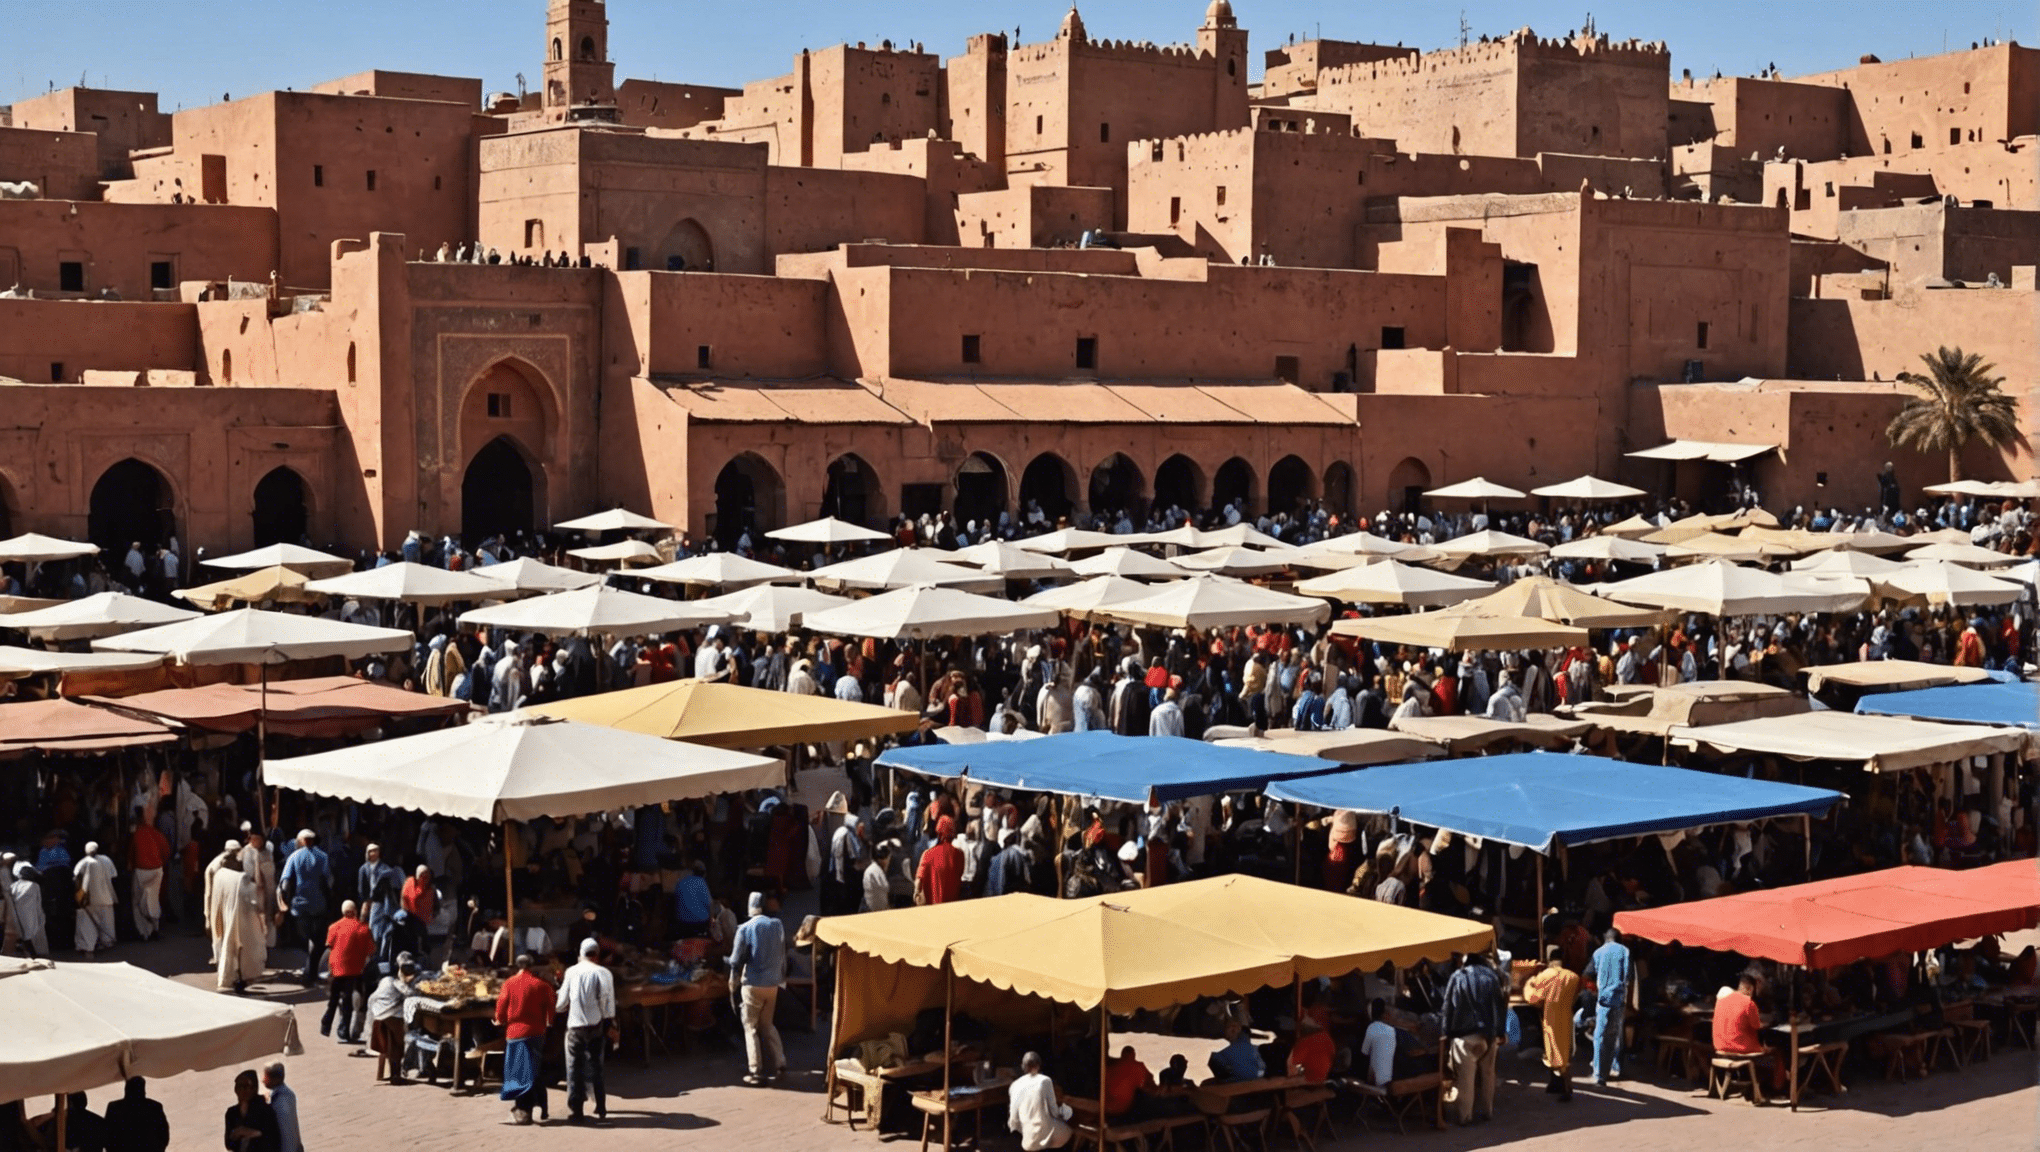 Finden Sie mit unserem umfassenden Reiseführer heraus, wie heiß es in Marrakesch im Mai wird. Planen Sie Ihre Reise mit Zuversicht und genießen Sie das perfekte Wetter in dieser atemberaubenden Stadt.